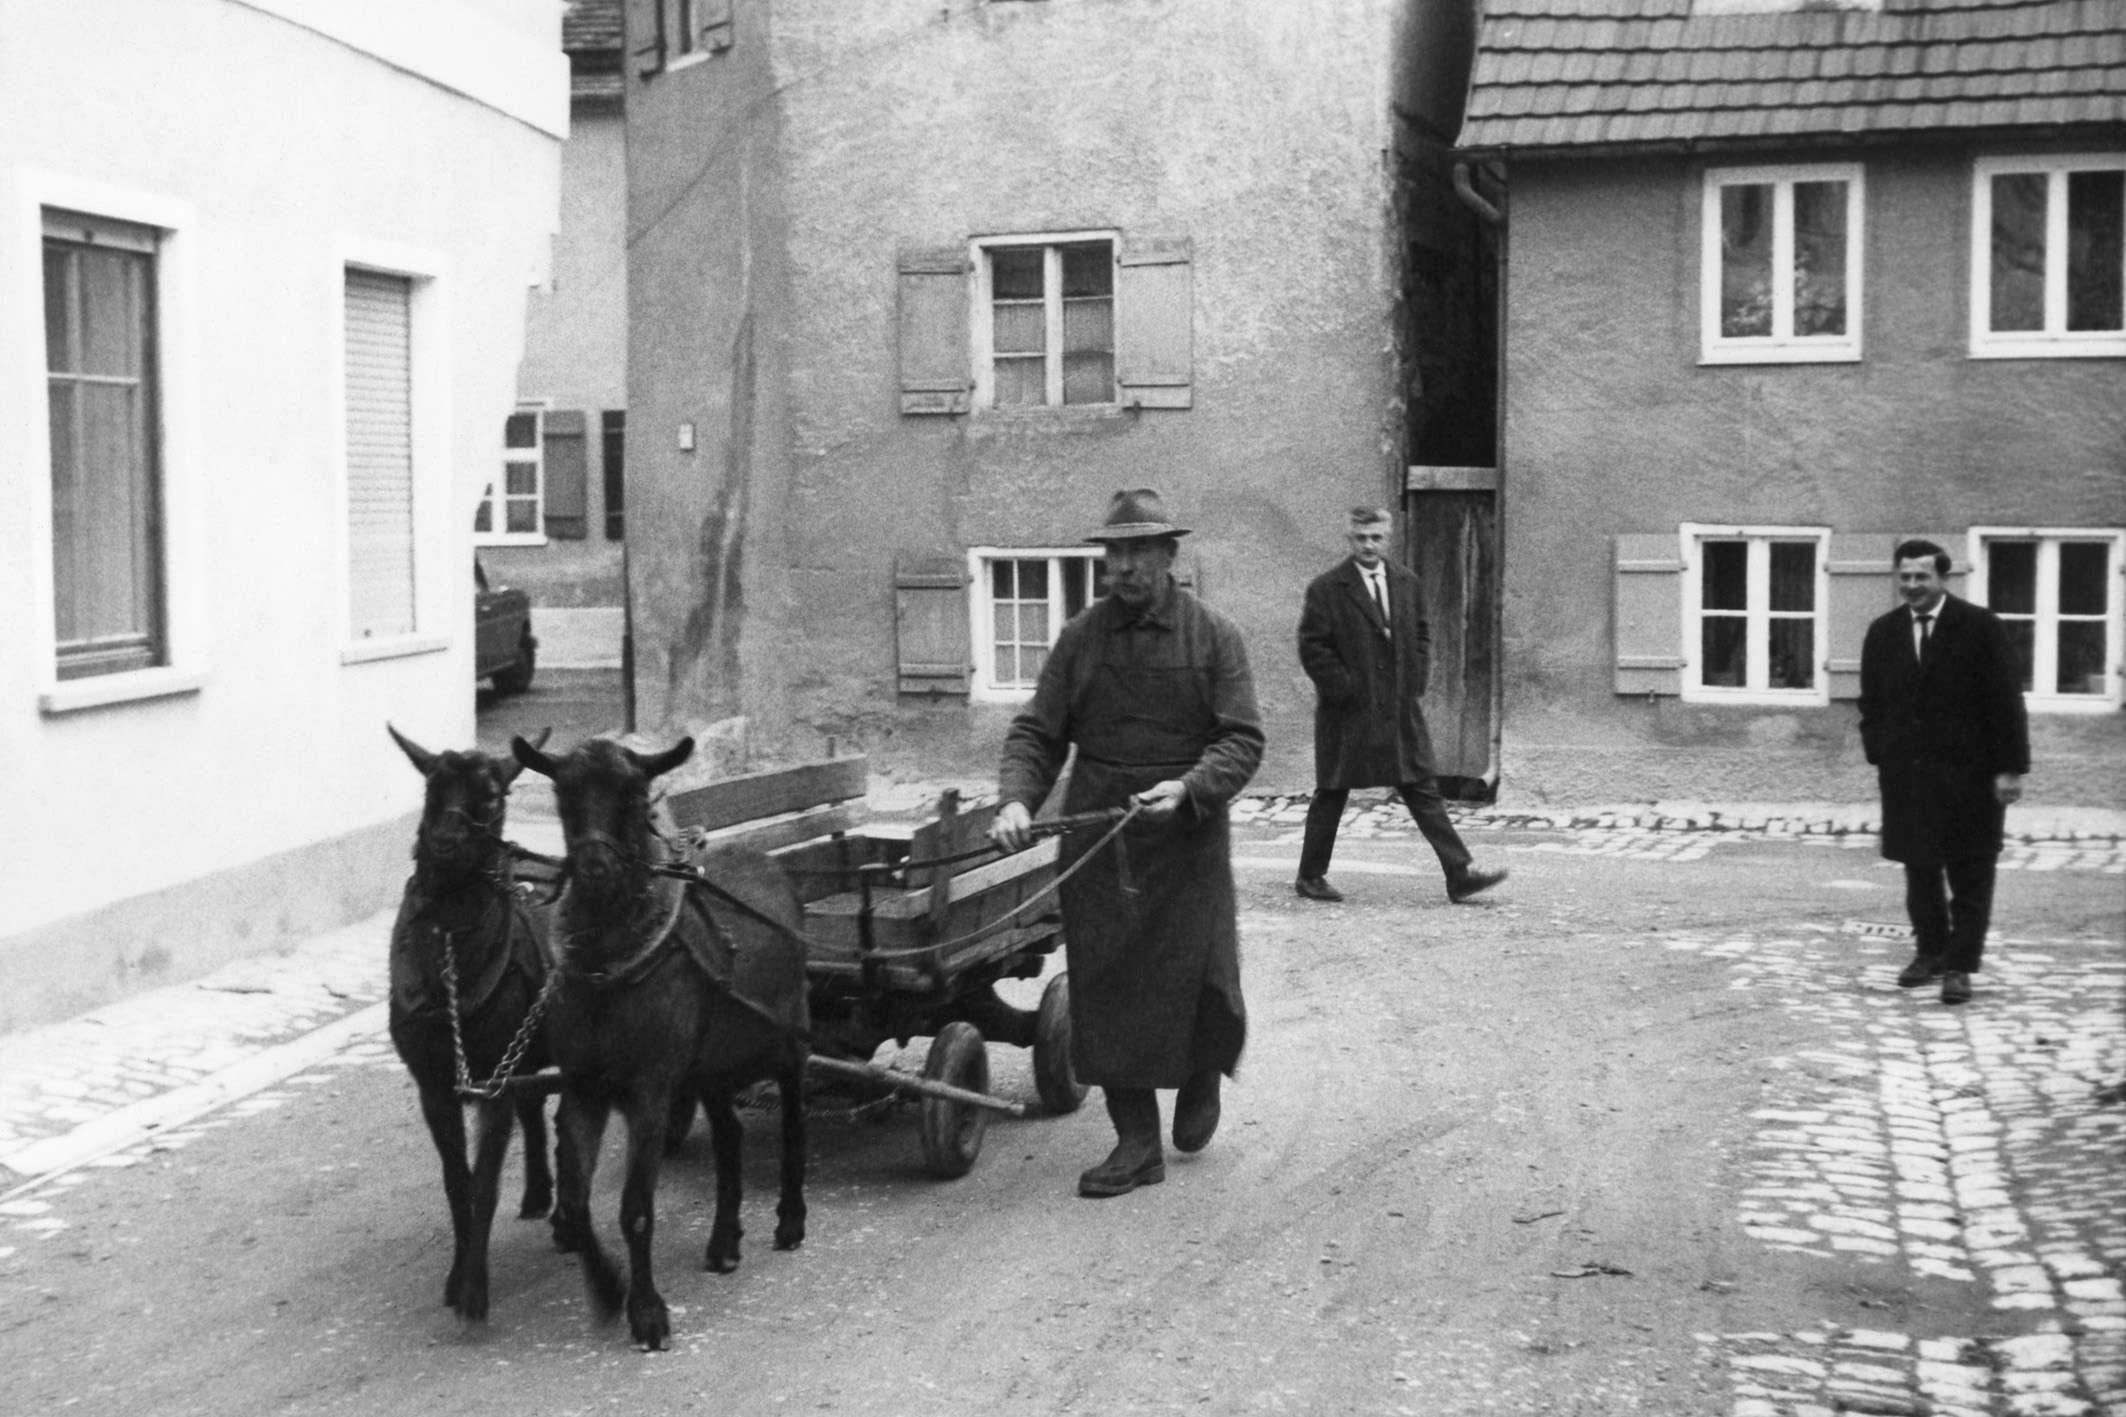 Die Kuh des kleinen Mannes: Noch in den 40er Jahren waren Ziegen als Nutztiere äußerst populär und wurden sogar als Lasttiere eingesetzt.